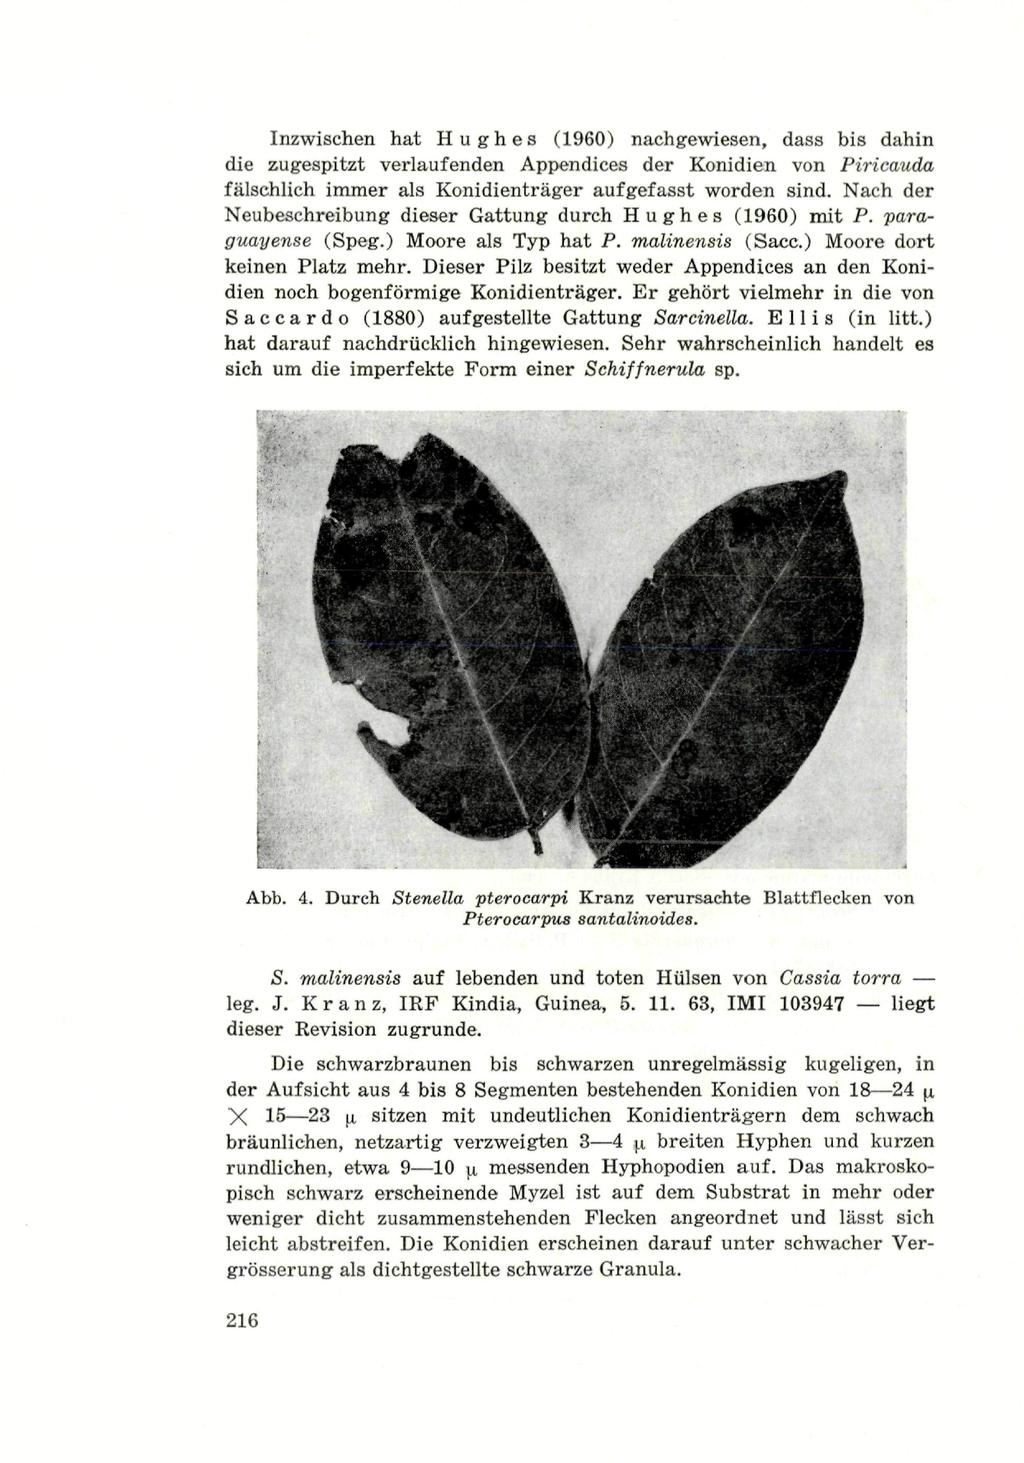 Inzwischen hat Hughes (1960) nachgewiesen, dass bis dahin die zugespitzt verlaufenden Appendices der Konidien von Piricauda fälschlich immer als Konidienträger aufgefasst worden sind.